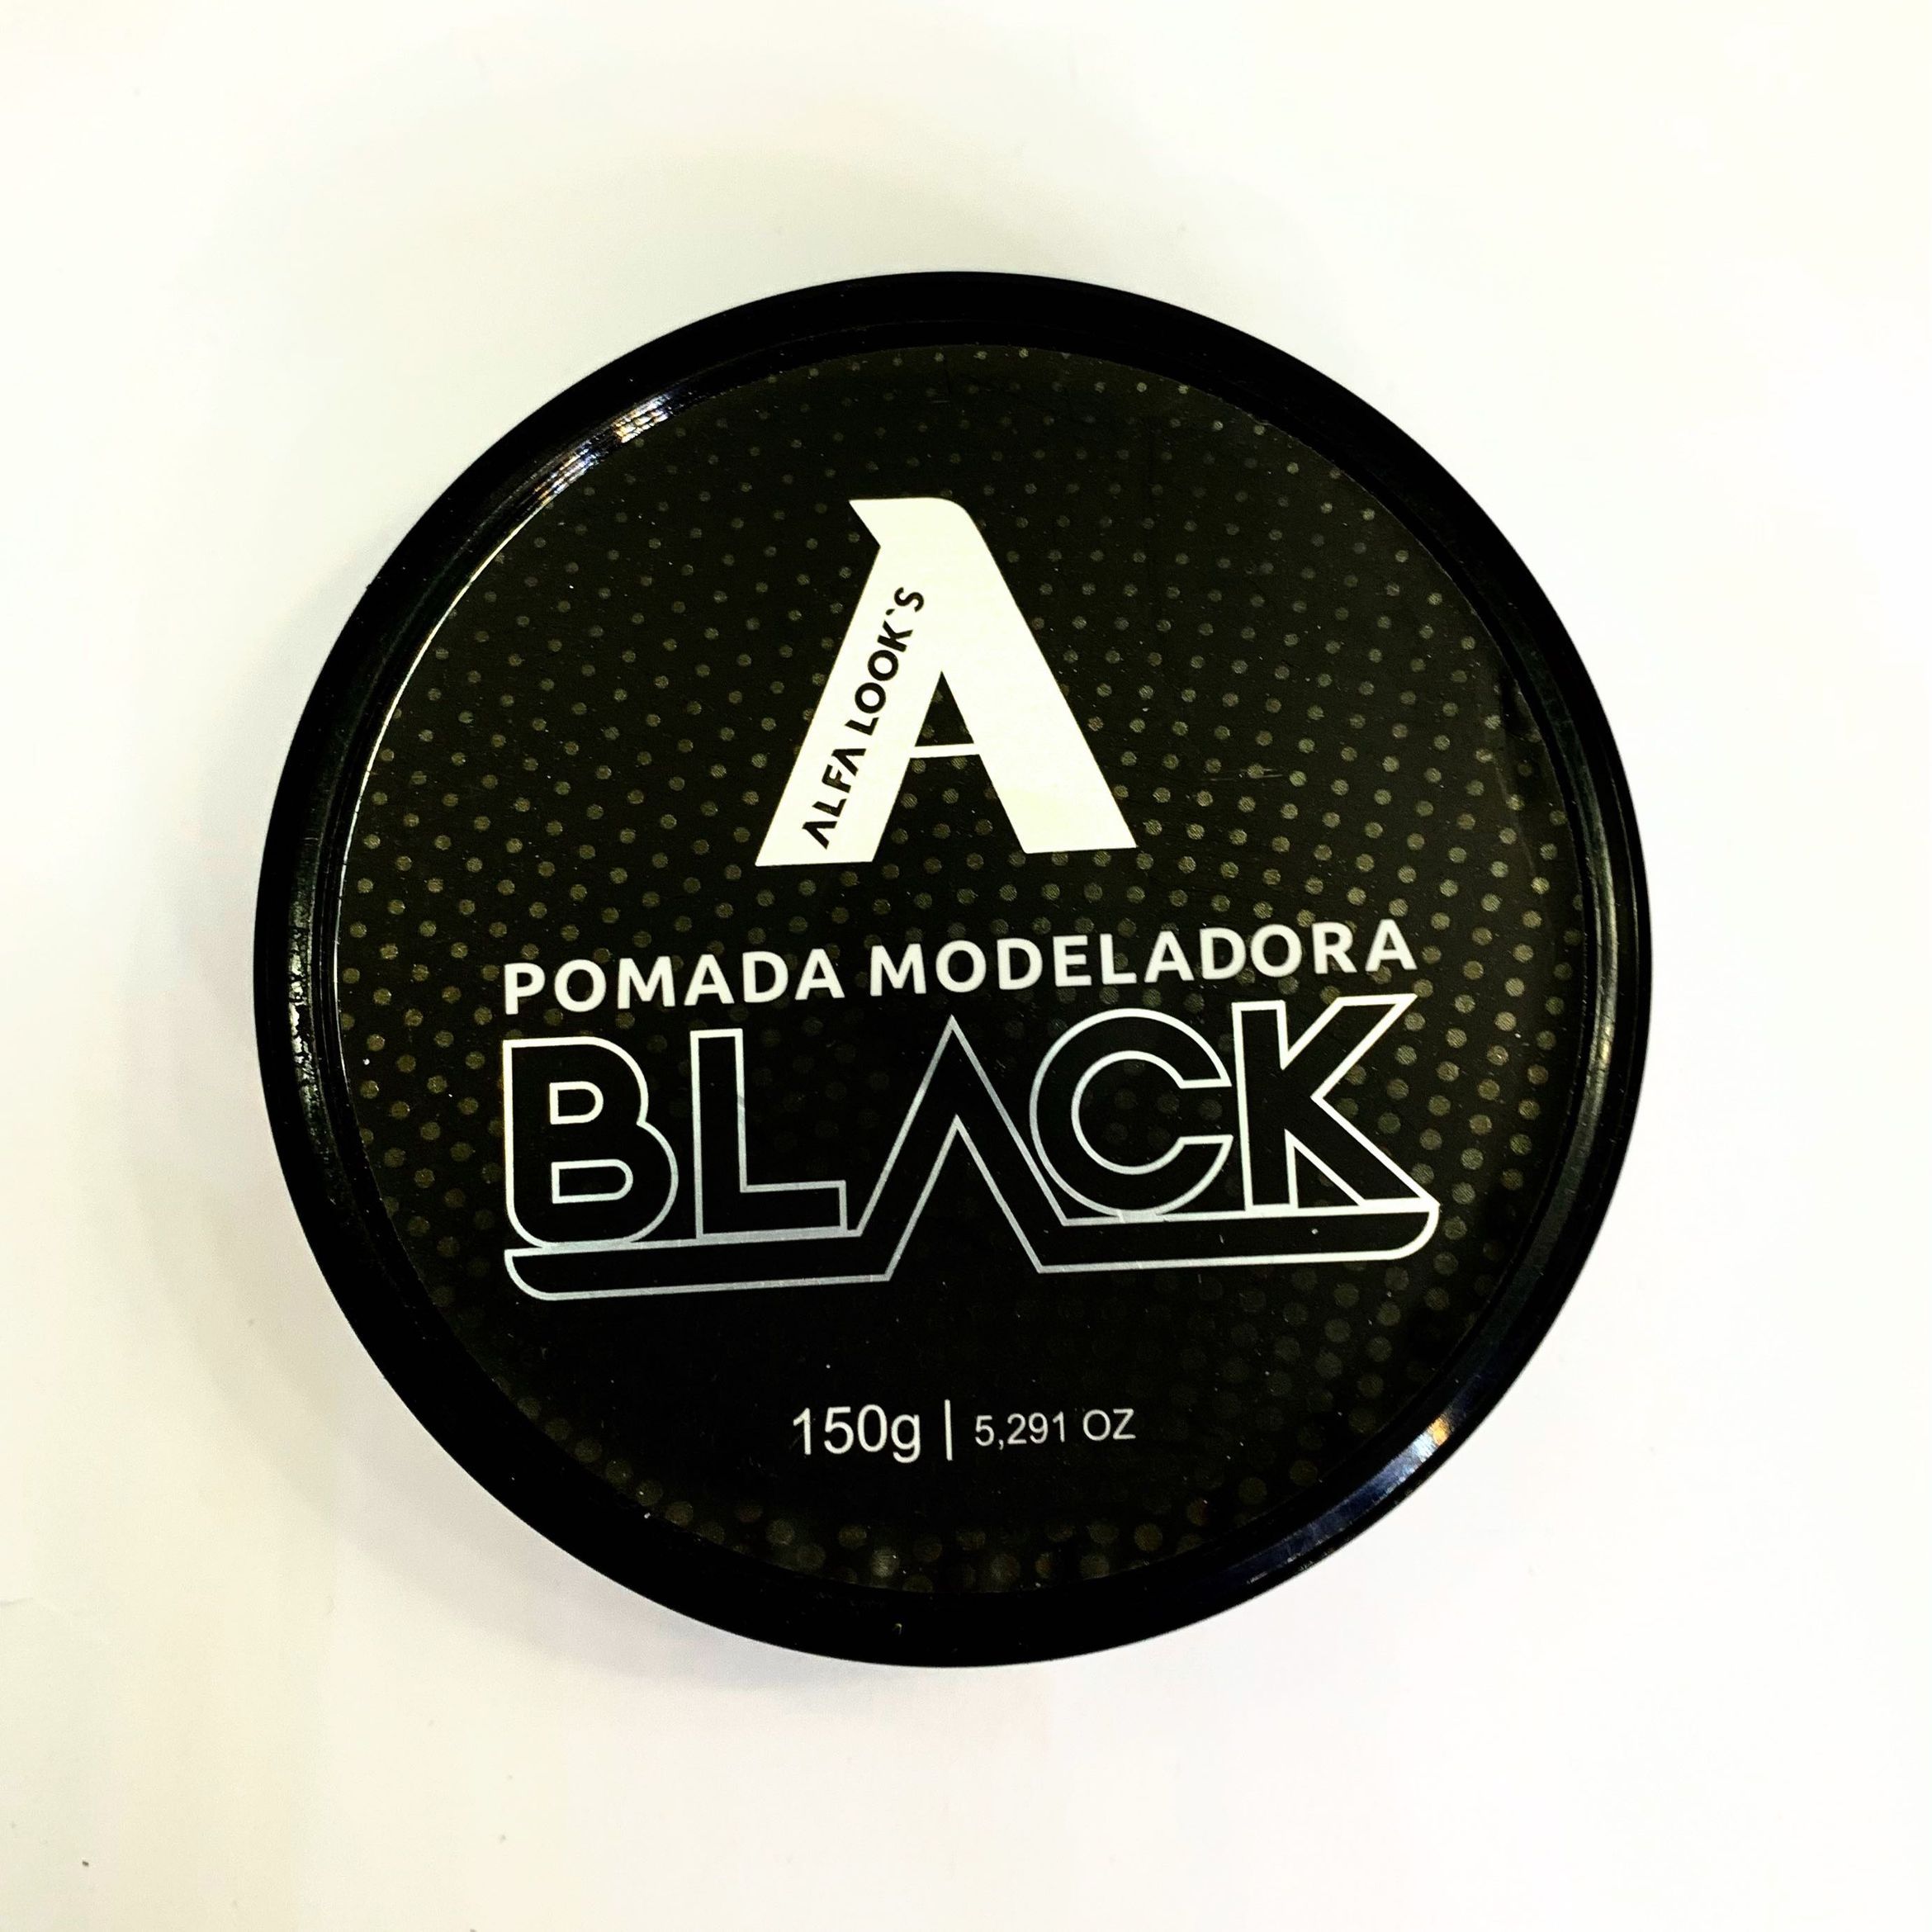 Portfólio de Pomada black alfa looks